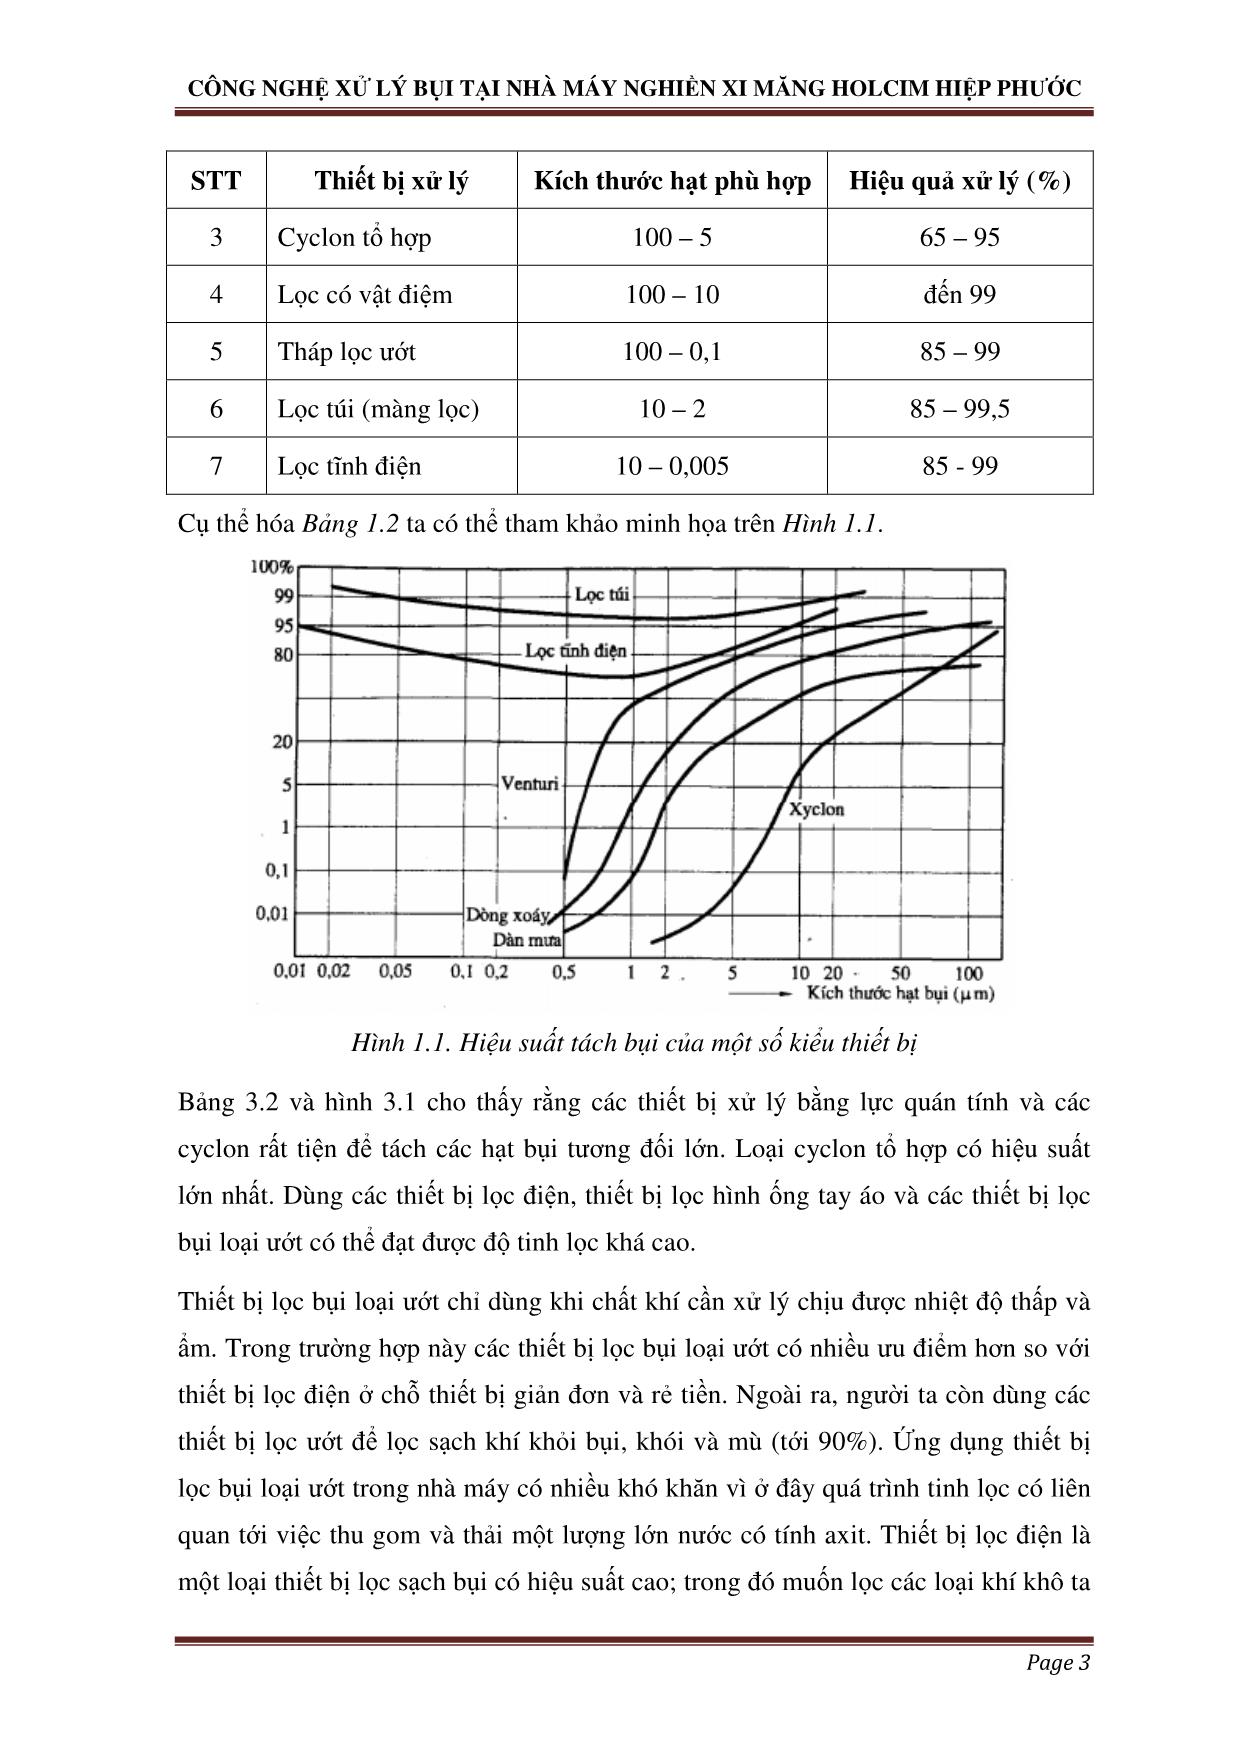 Chuyên đề Công nghệ xử lý bụi - Case study: công nghệ xử lý bụi tại nhà máy nghiền xi măng holcim Hiệp Phước trang 4